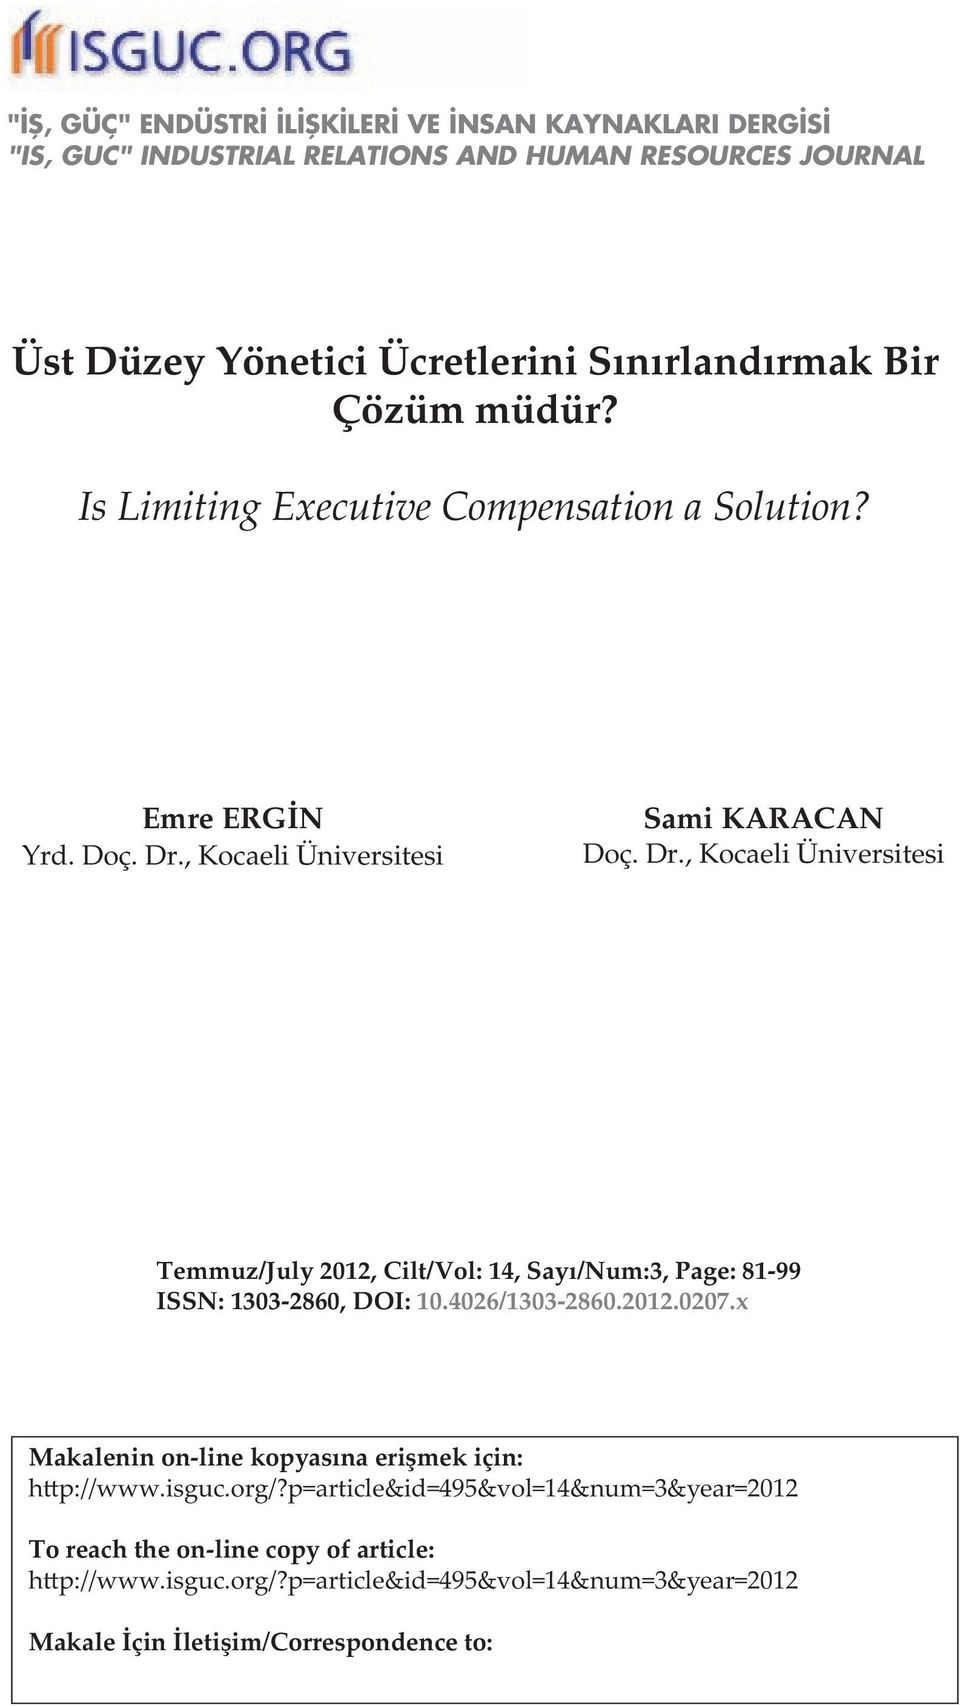 , Kocaeli Üniversitesi Sami KARACAN Doç. Dr., Kocaeli Üniversitesi Temmuz/July 2012, Cilt/Vol: 14, Sayı/Num:3, Page: 81-99 ISSN: 1303-2860, DOI: 10.